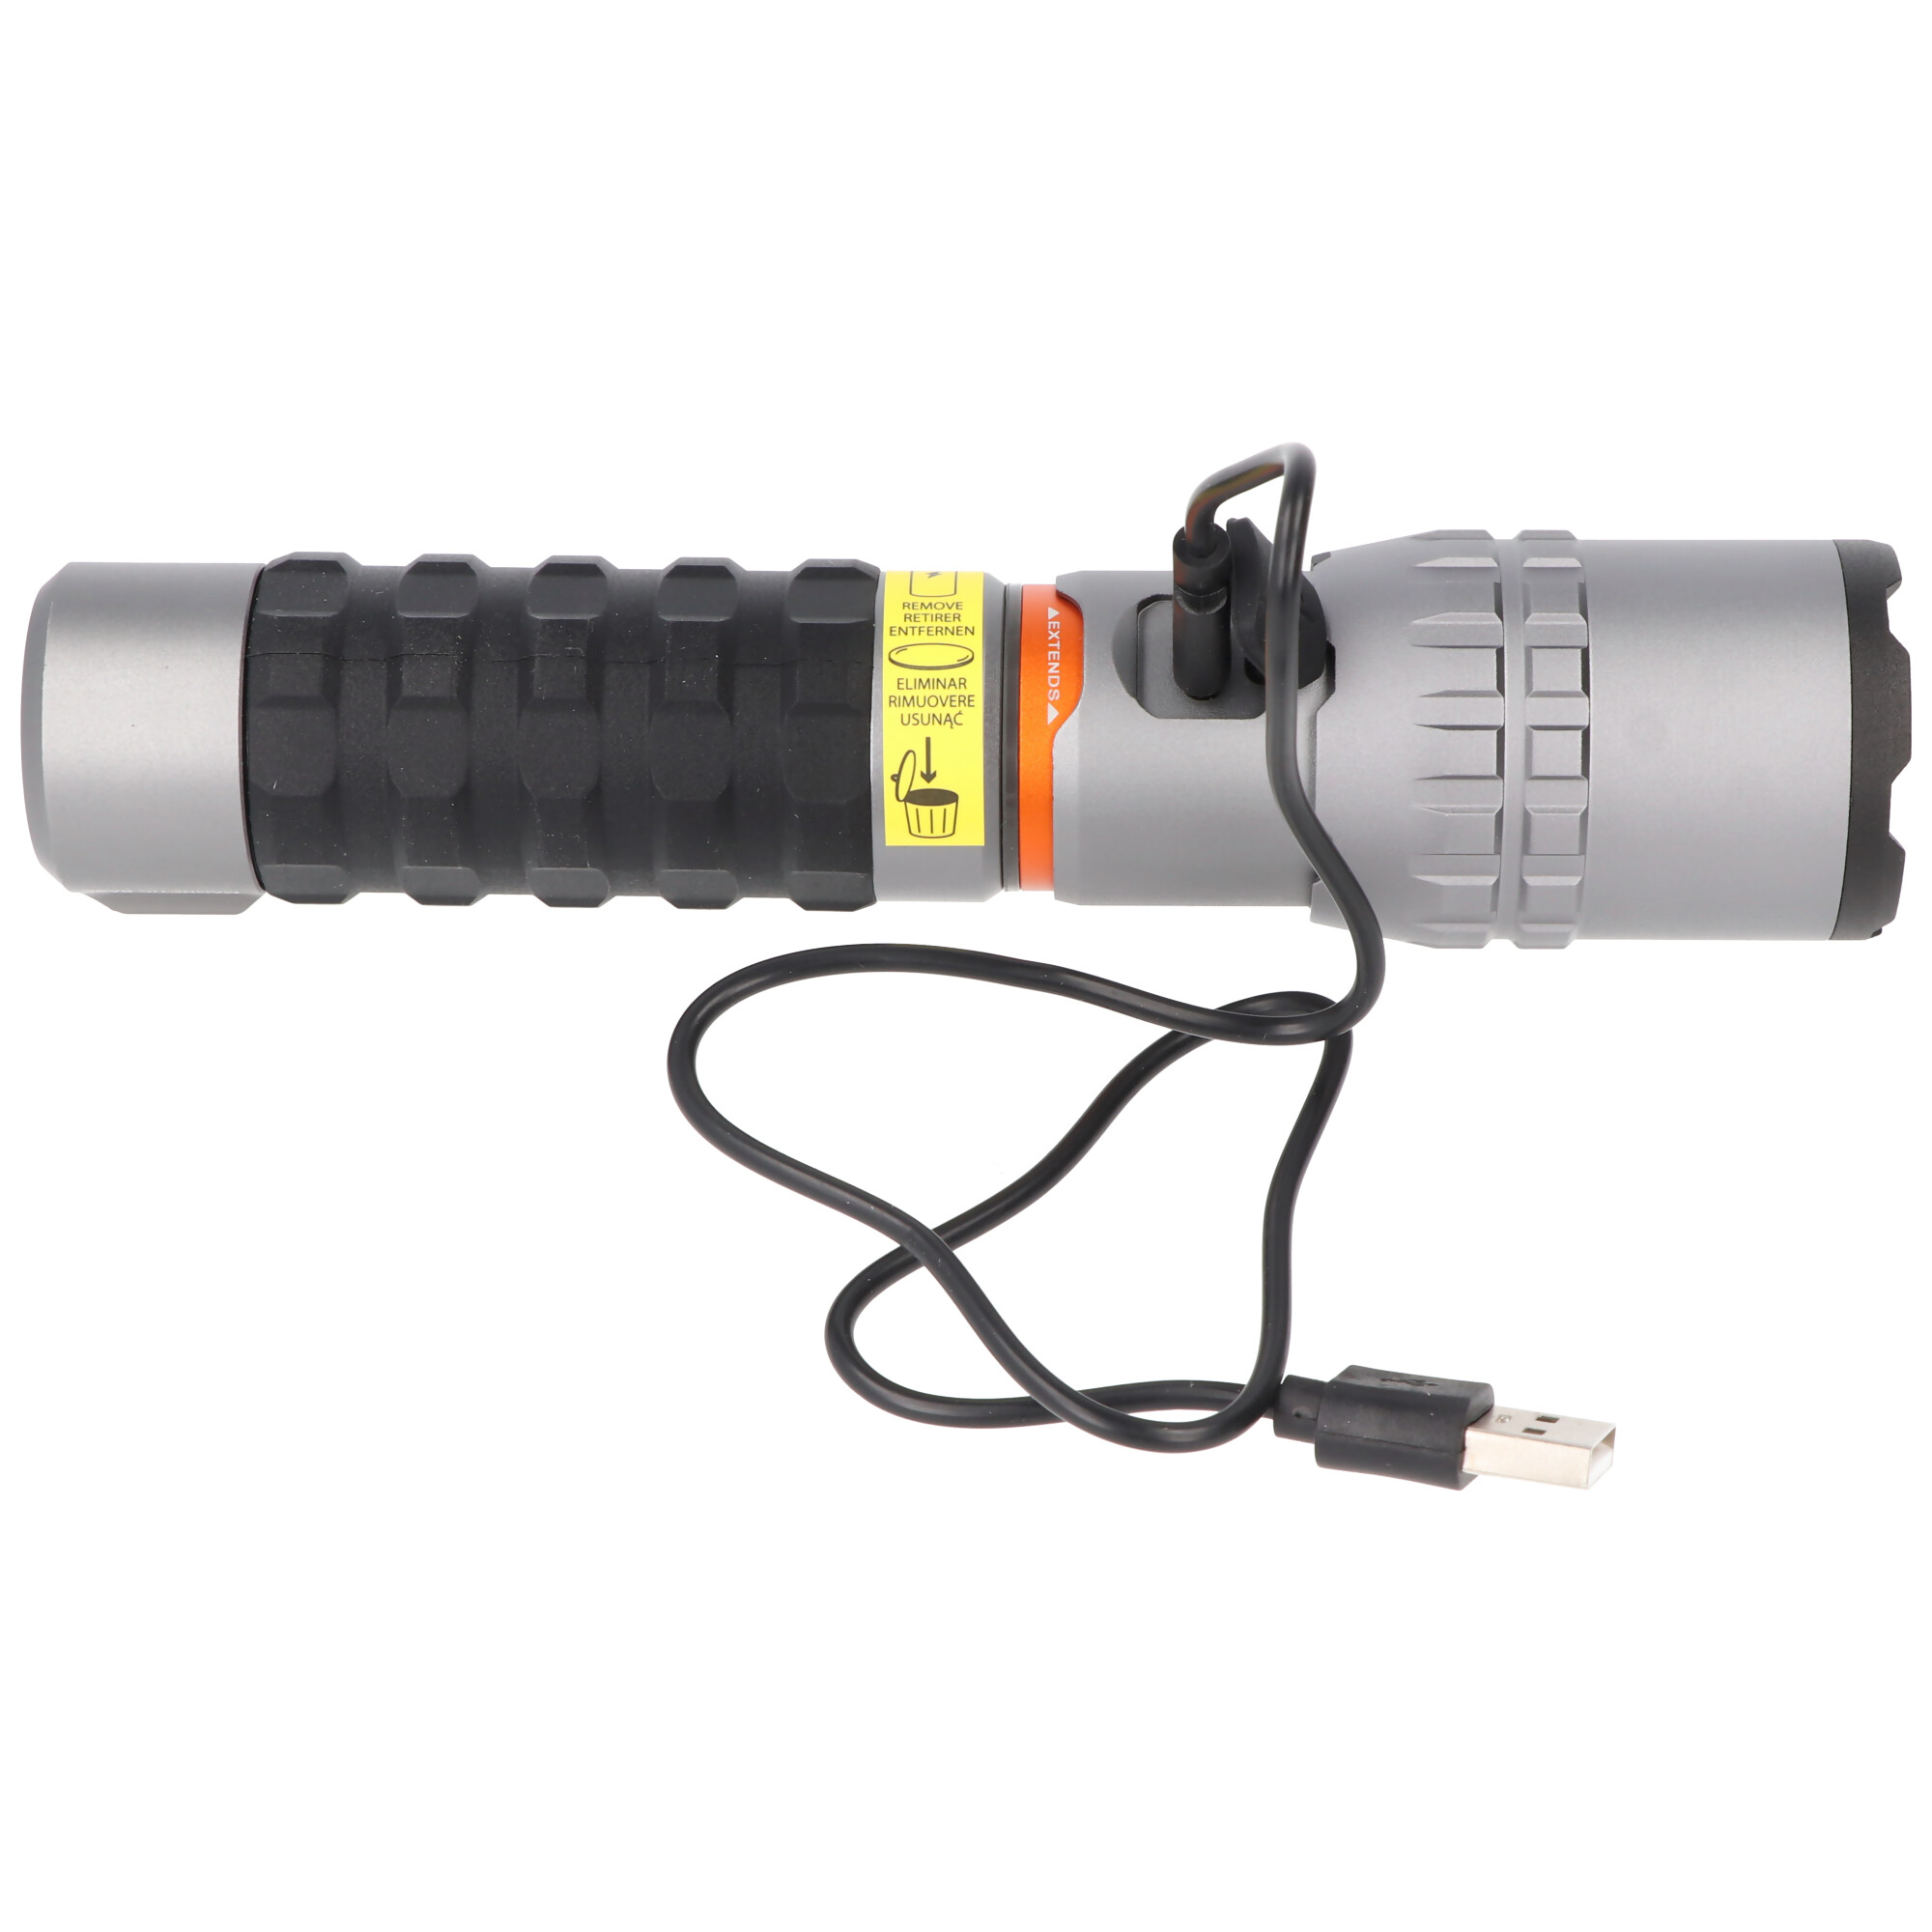 NEBO LED Taschenlampe SLYDE KING 2K mit bis zu 2000lm und 409m Leuchtweite integrierter Li-ion 18650 Akku 3,7V 2200mAh